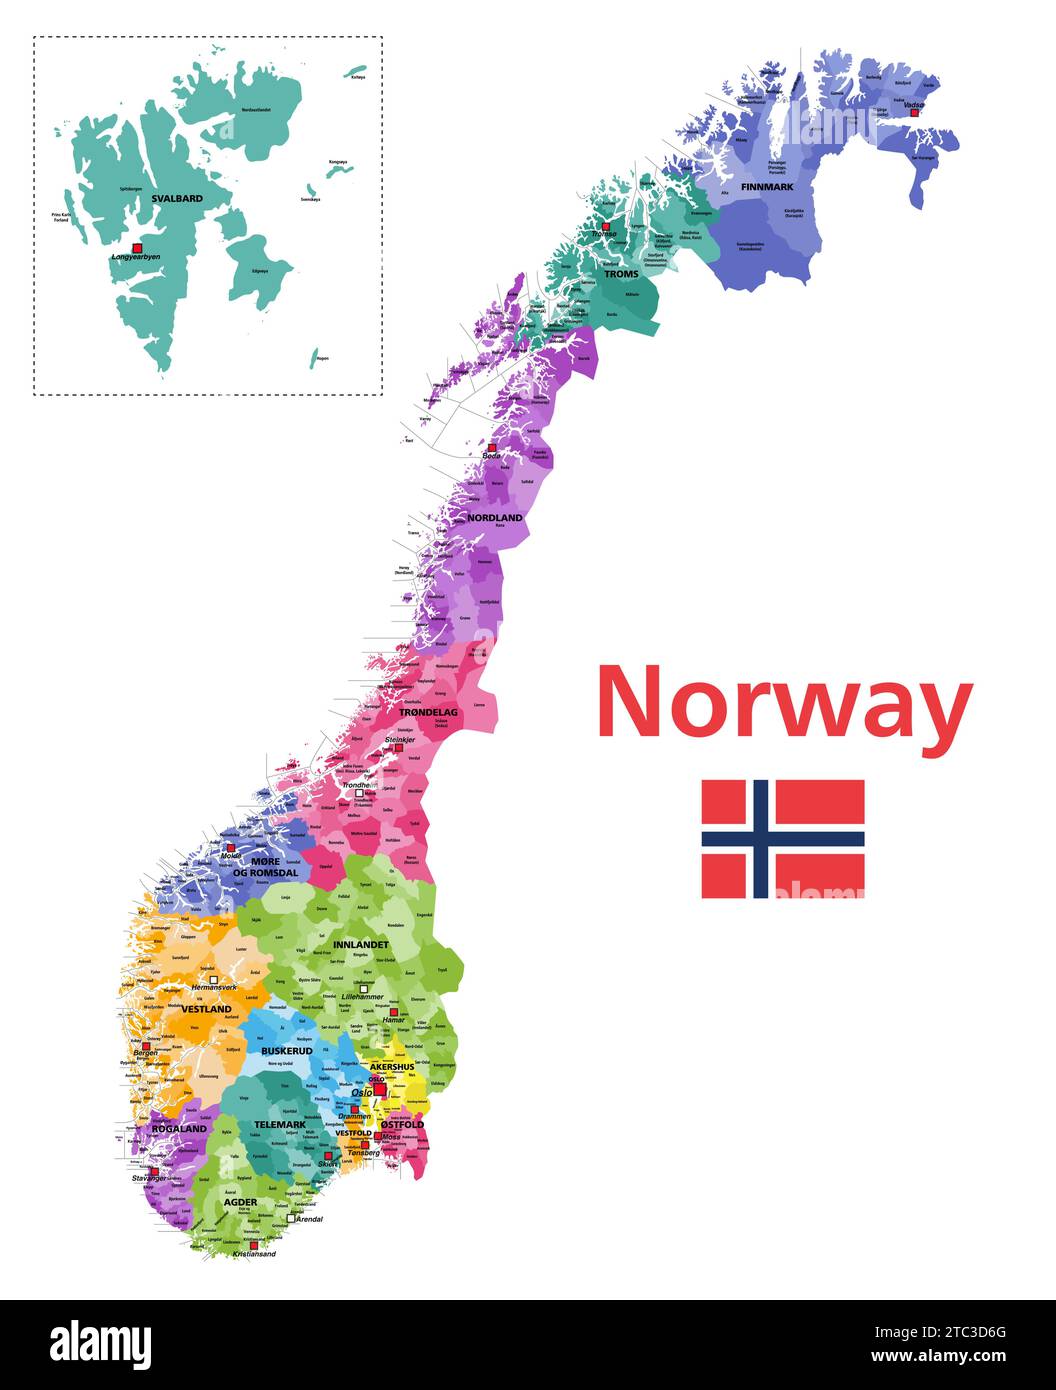 Comuni della Norvegia mappa vettoriale dettagliata e colorata per regioni amministrative (contee). Tutti i comuni e le capitali sono nominati. Bandiera di Illustrazione Vettoriale